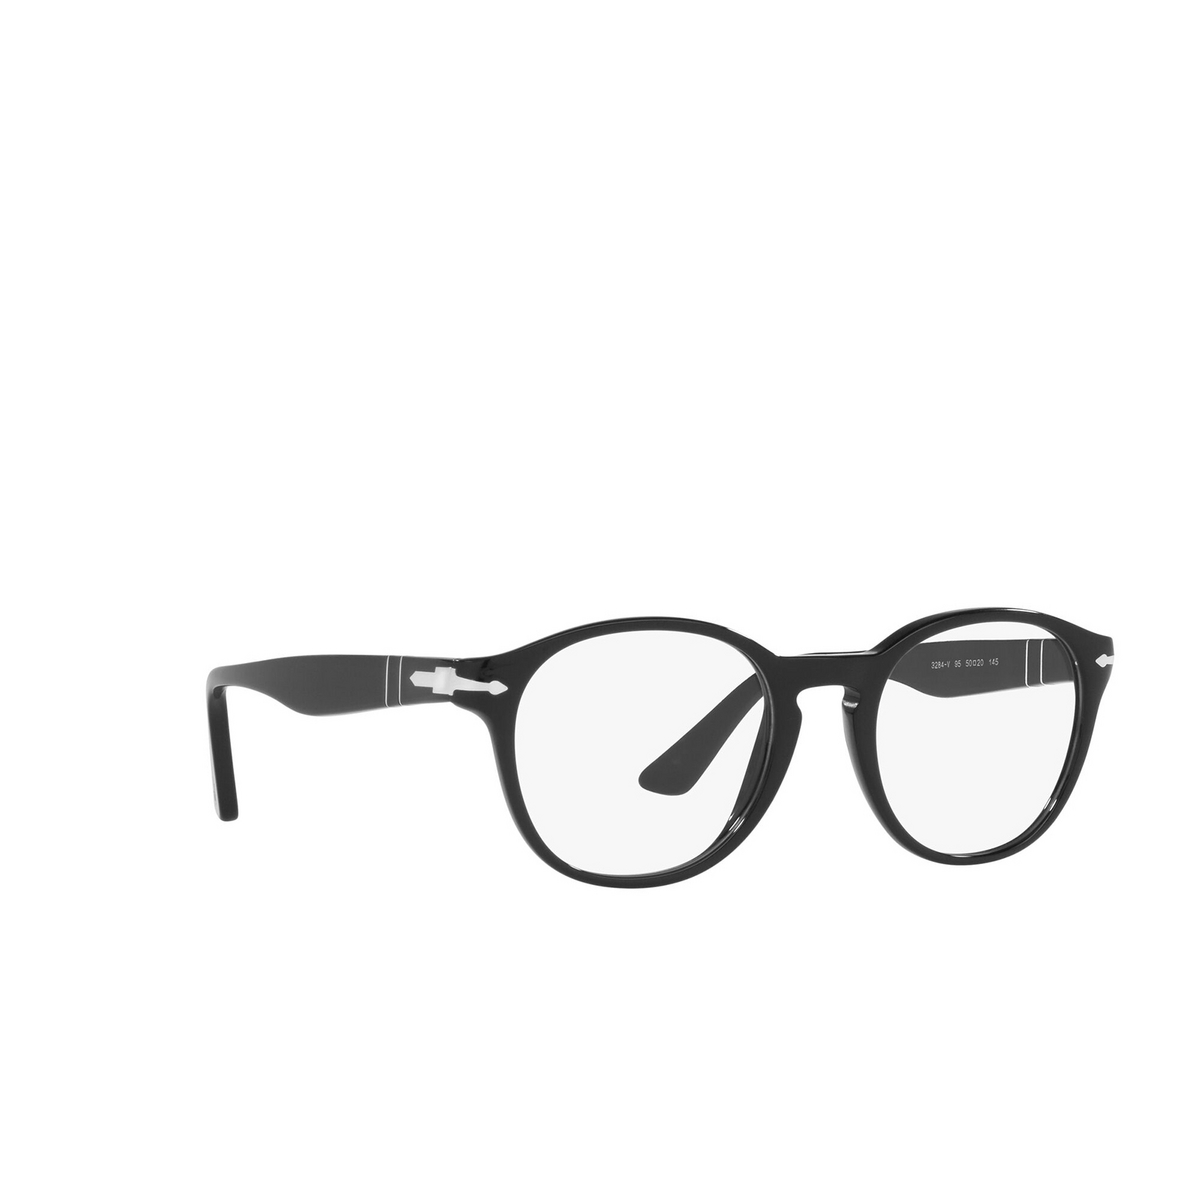 Persol® Round Eyeglasses: PO3284V color Black 95 - three-quarters view.